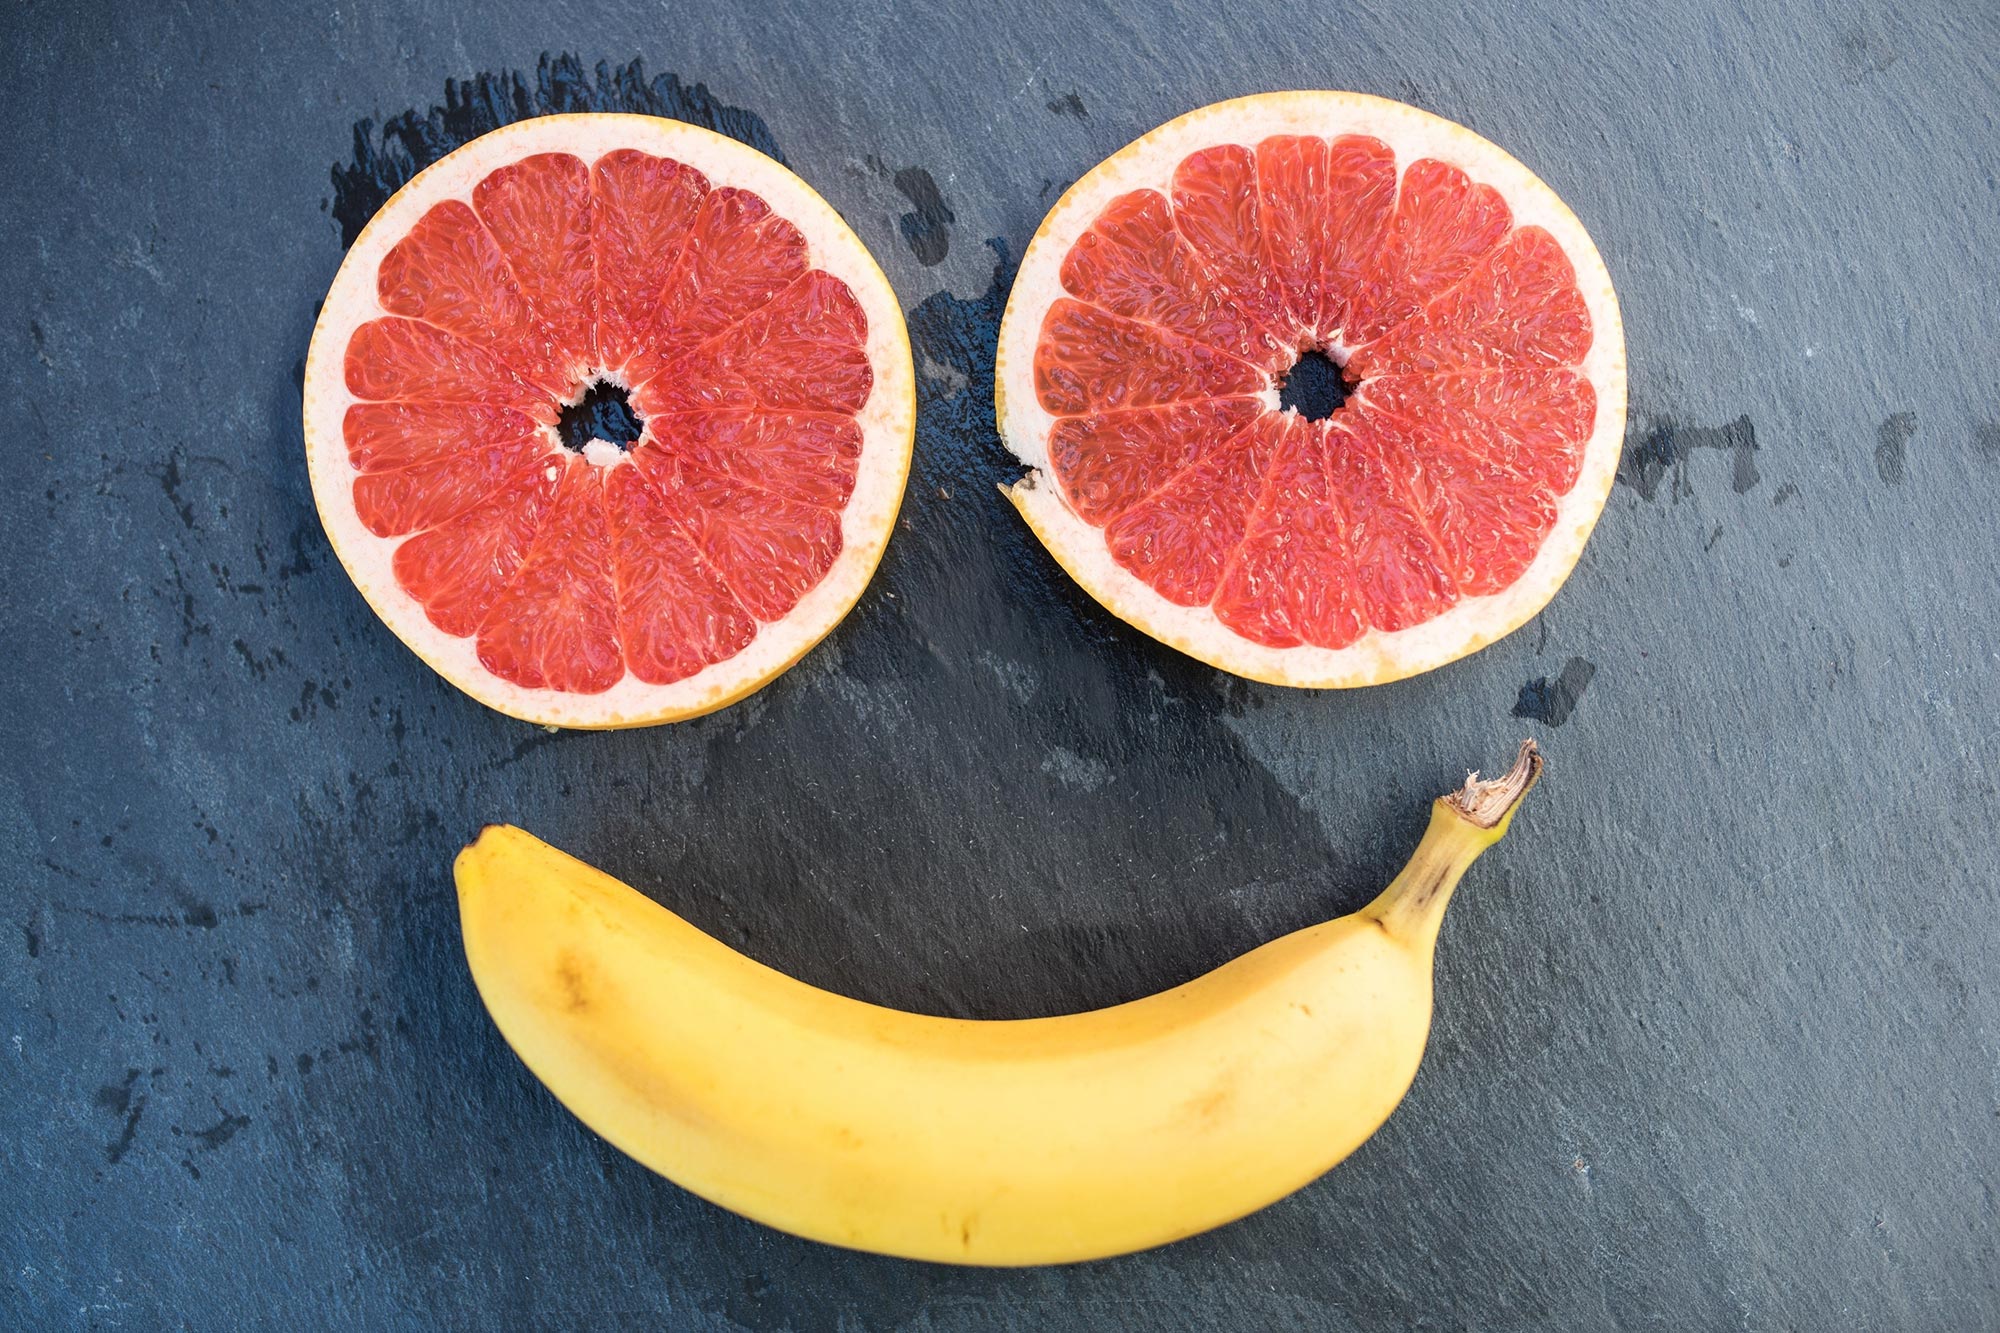 تظهر الأبحاث أن تناول الفاكهة بانتظام يمكن أن يقلل من التوتر